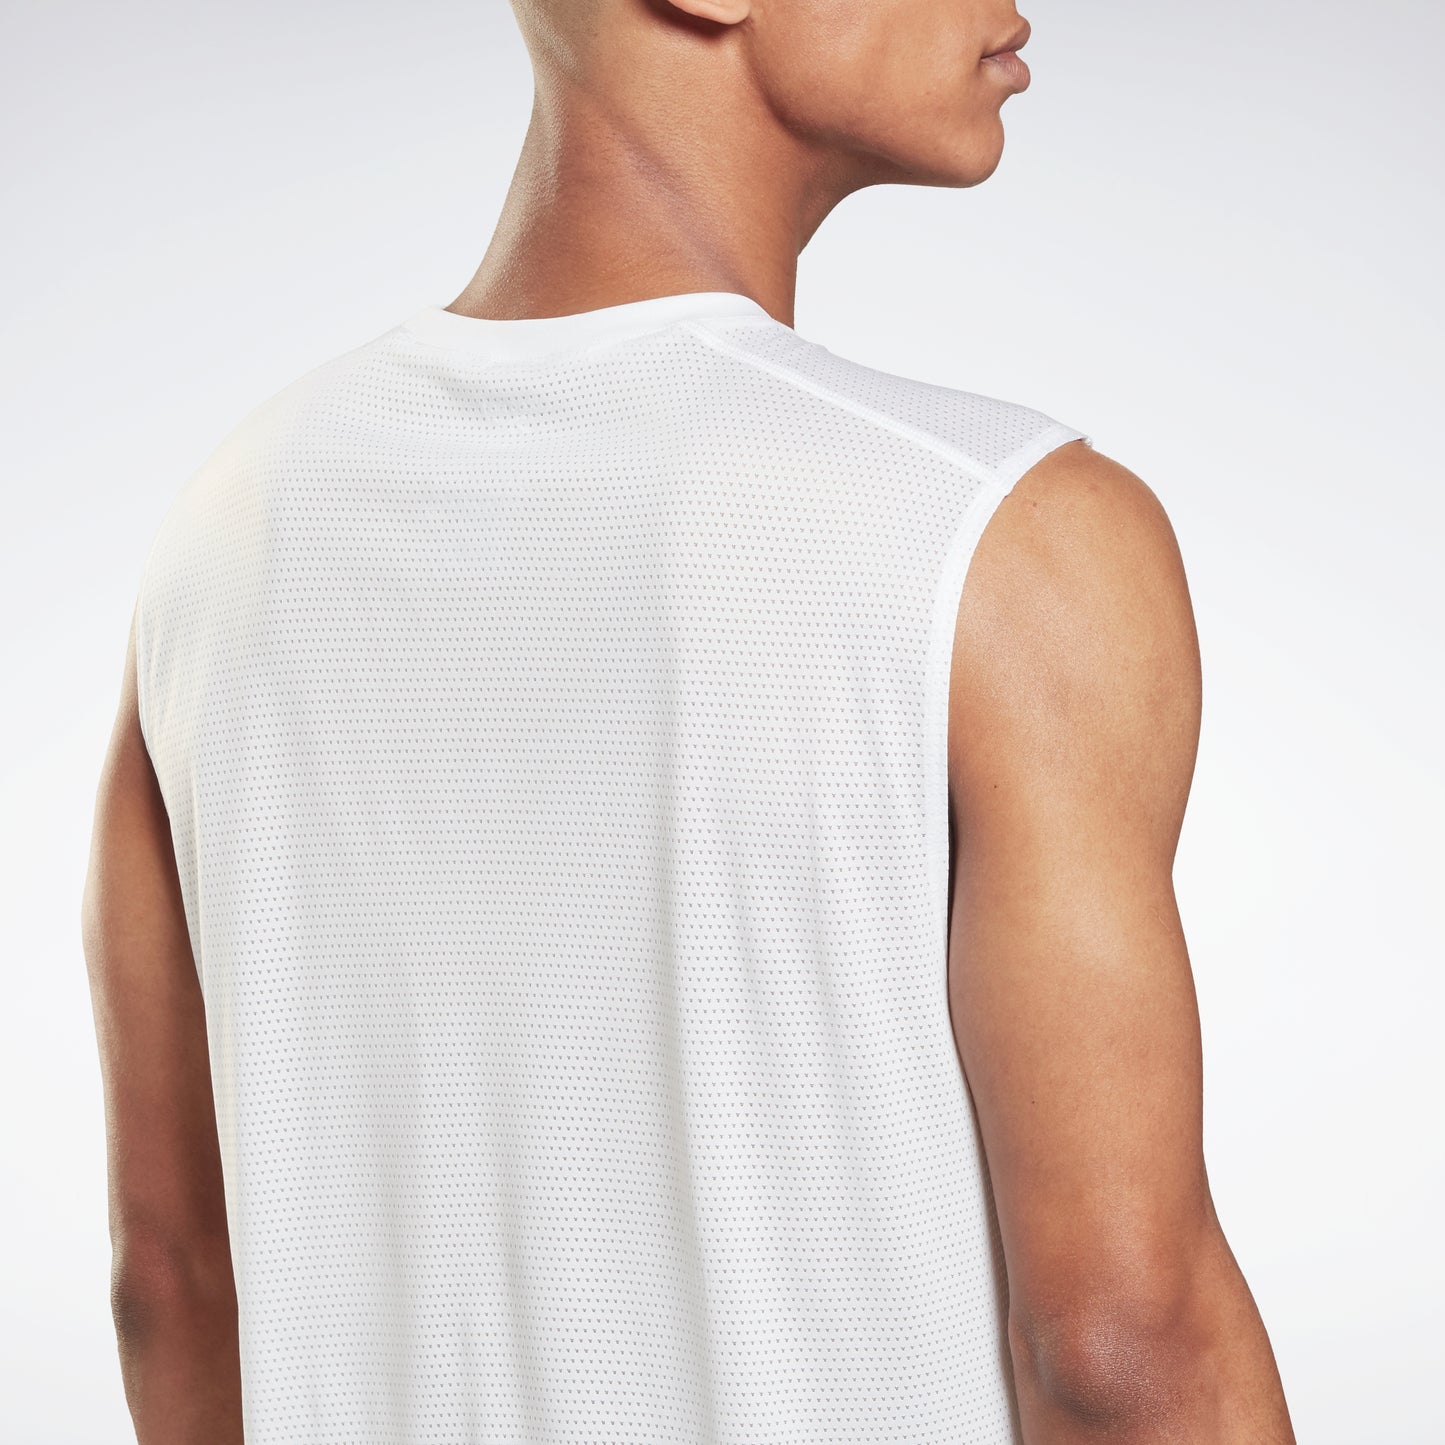 Reebok Apparel Men Workout Ready Sleeveless Tech T-Shirt White/White